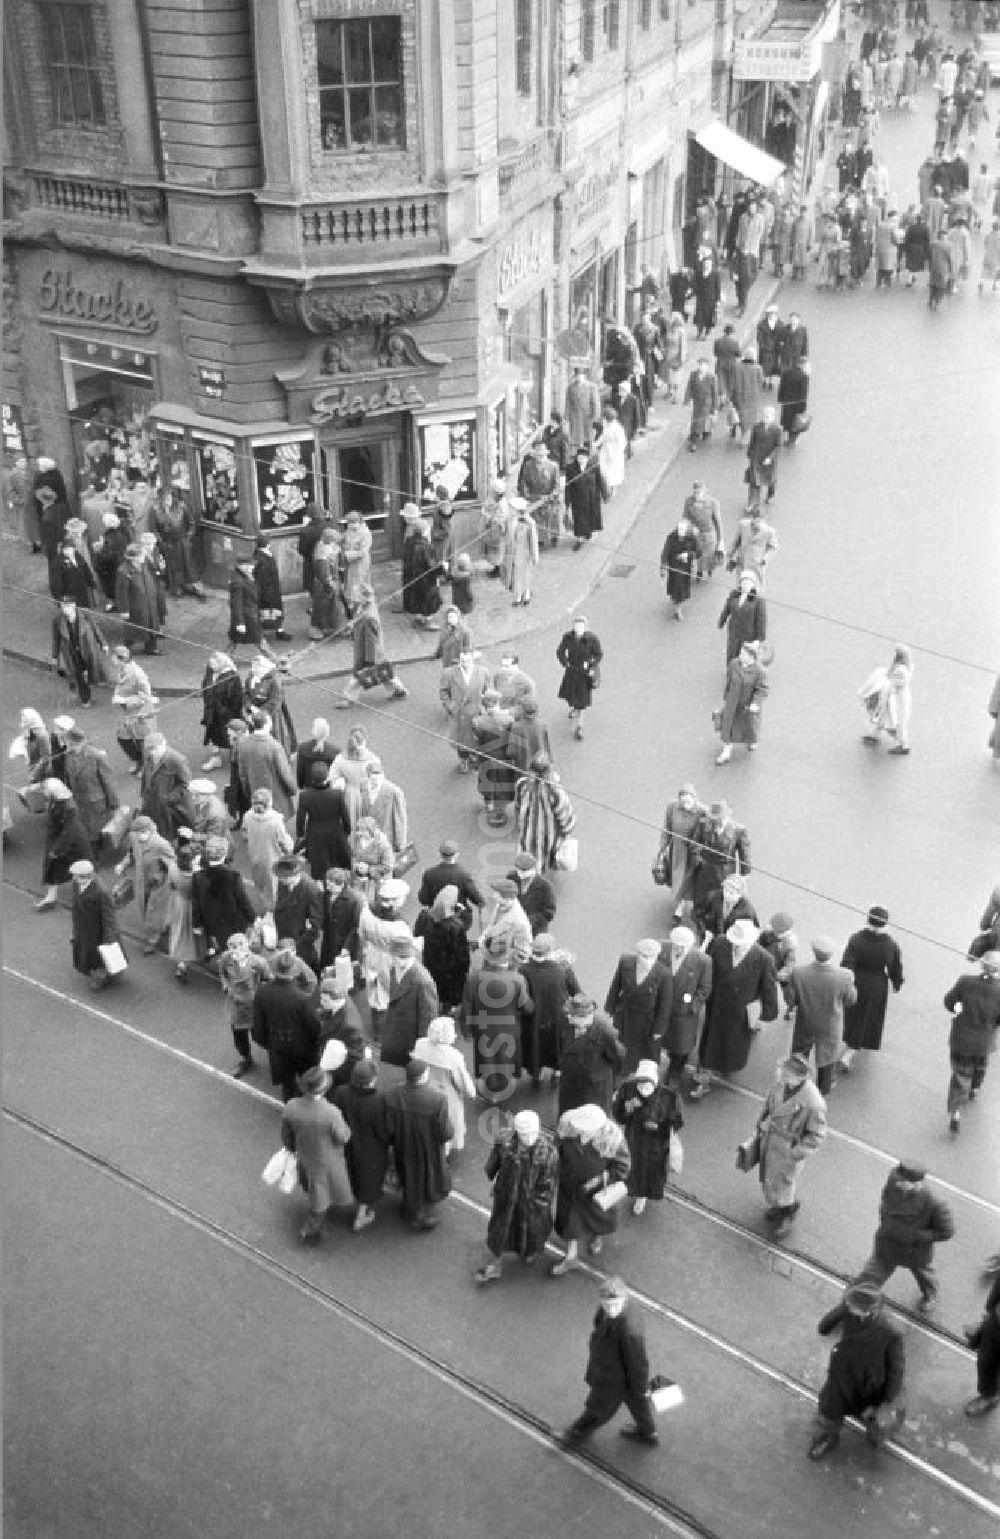 GDR image archive: Leipzig - Innenstadt, Brühlstraße Ecke Hainstraße: An der Ecke das Geschäft Stacke und diverse Passanten im Bild. Bestmögliche Qualität nach Vorlage!